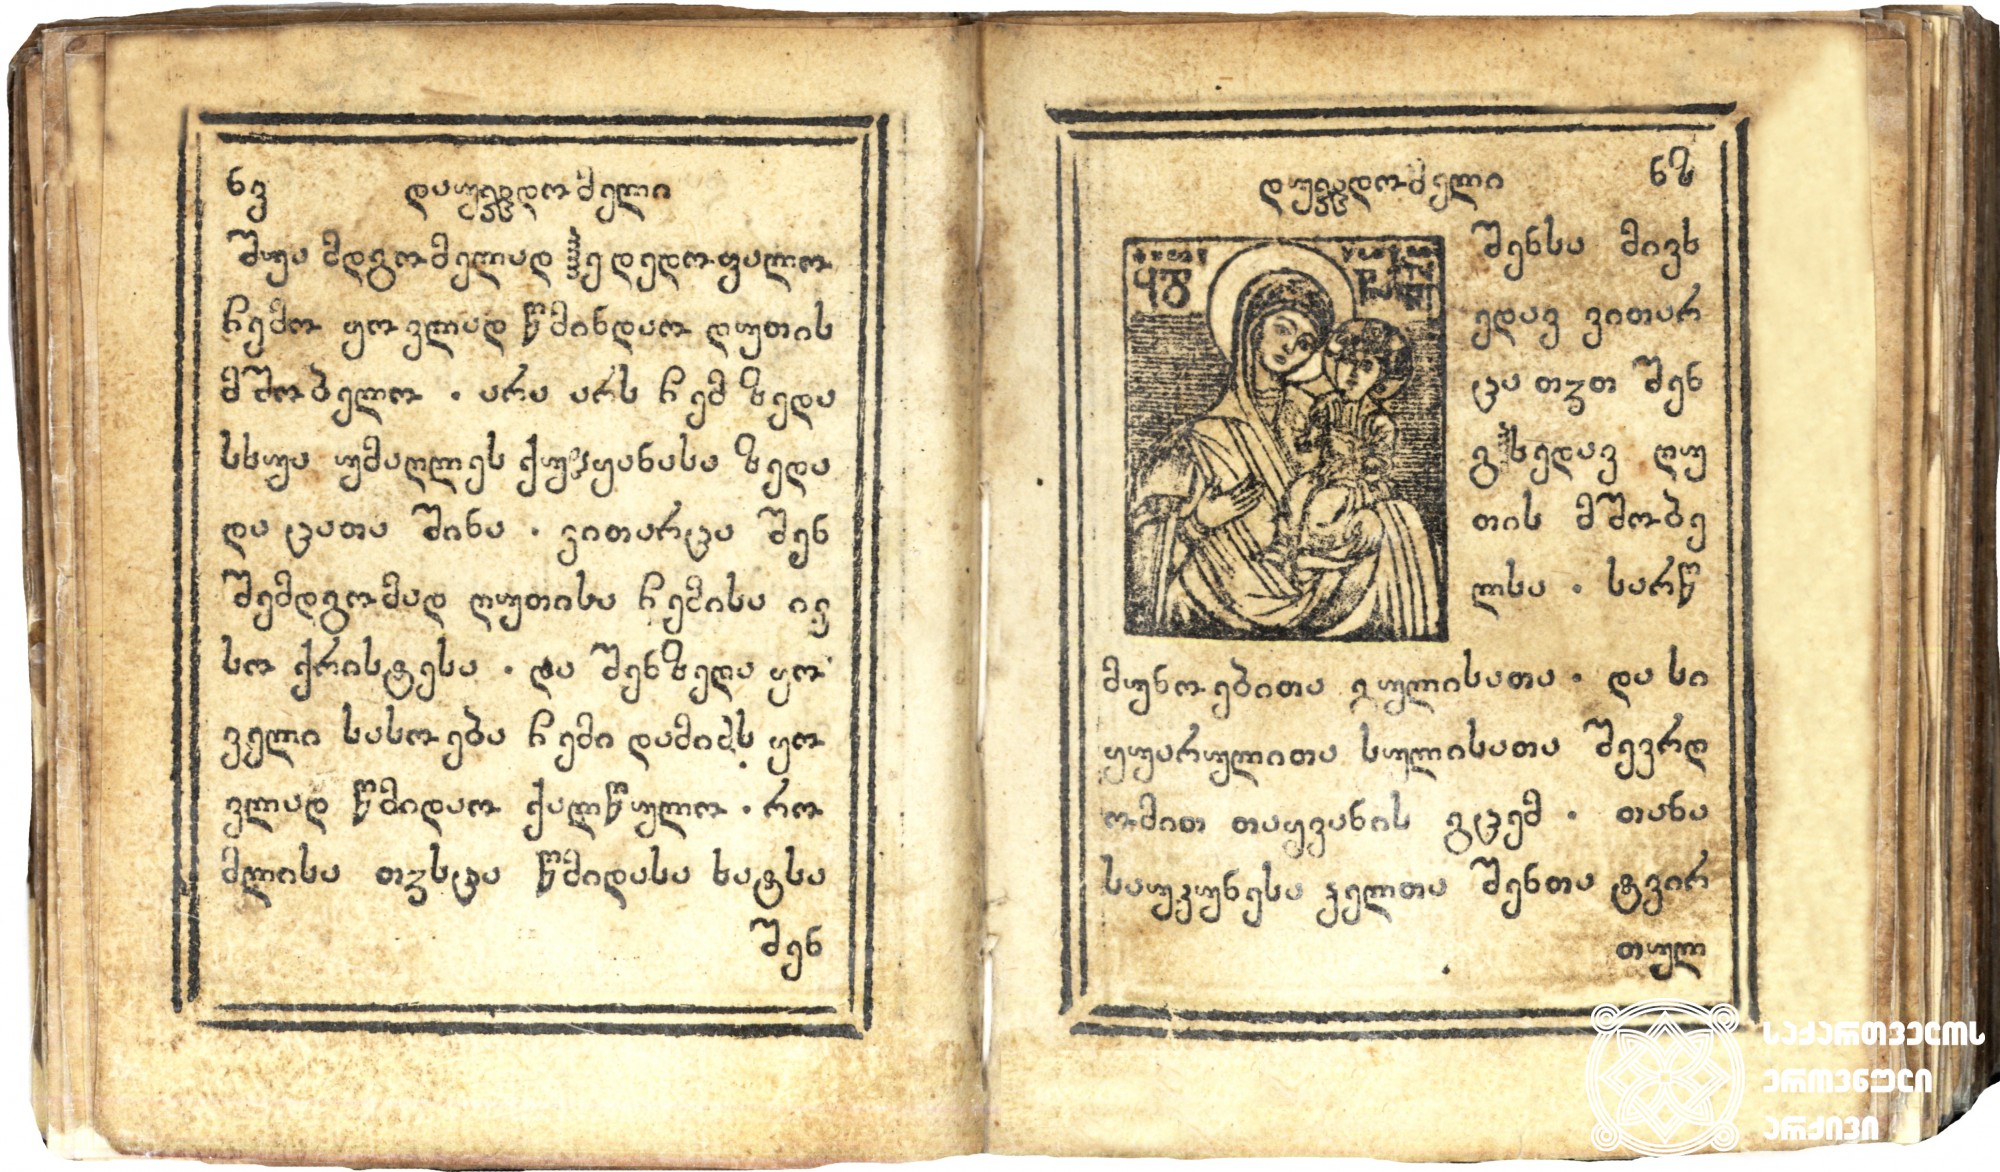 დაუჯდომელი <br>
ტფილისი, 1790 <br>
ერეკლე II-ის სტამბა
მწერალი: ქრისტესია დიონოსის (ხუცის) ძე
მესტამბე: რაზმაძე რომანოზ ზუბაშვილი
დაზგის მმართველი: ქრისტეფორე გურამიშვილი
<br>
Akathist <br>
Tfilisi, 1790<br>
Printing house of Erekle II
Writer: Kristesia, son of Dionosi
Printer: Razmadze Romanoz Zubashvili
Printing-press manager: Kristephore Guramishvili